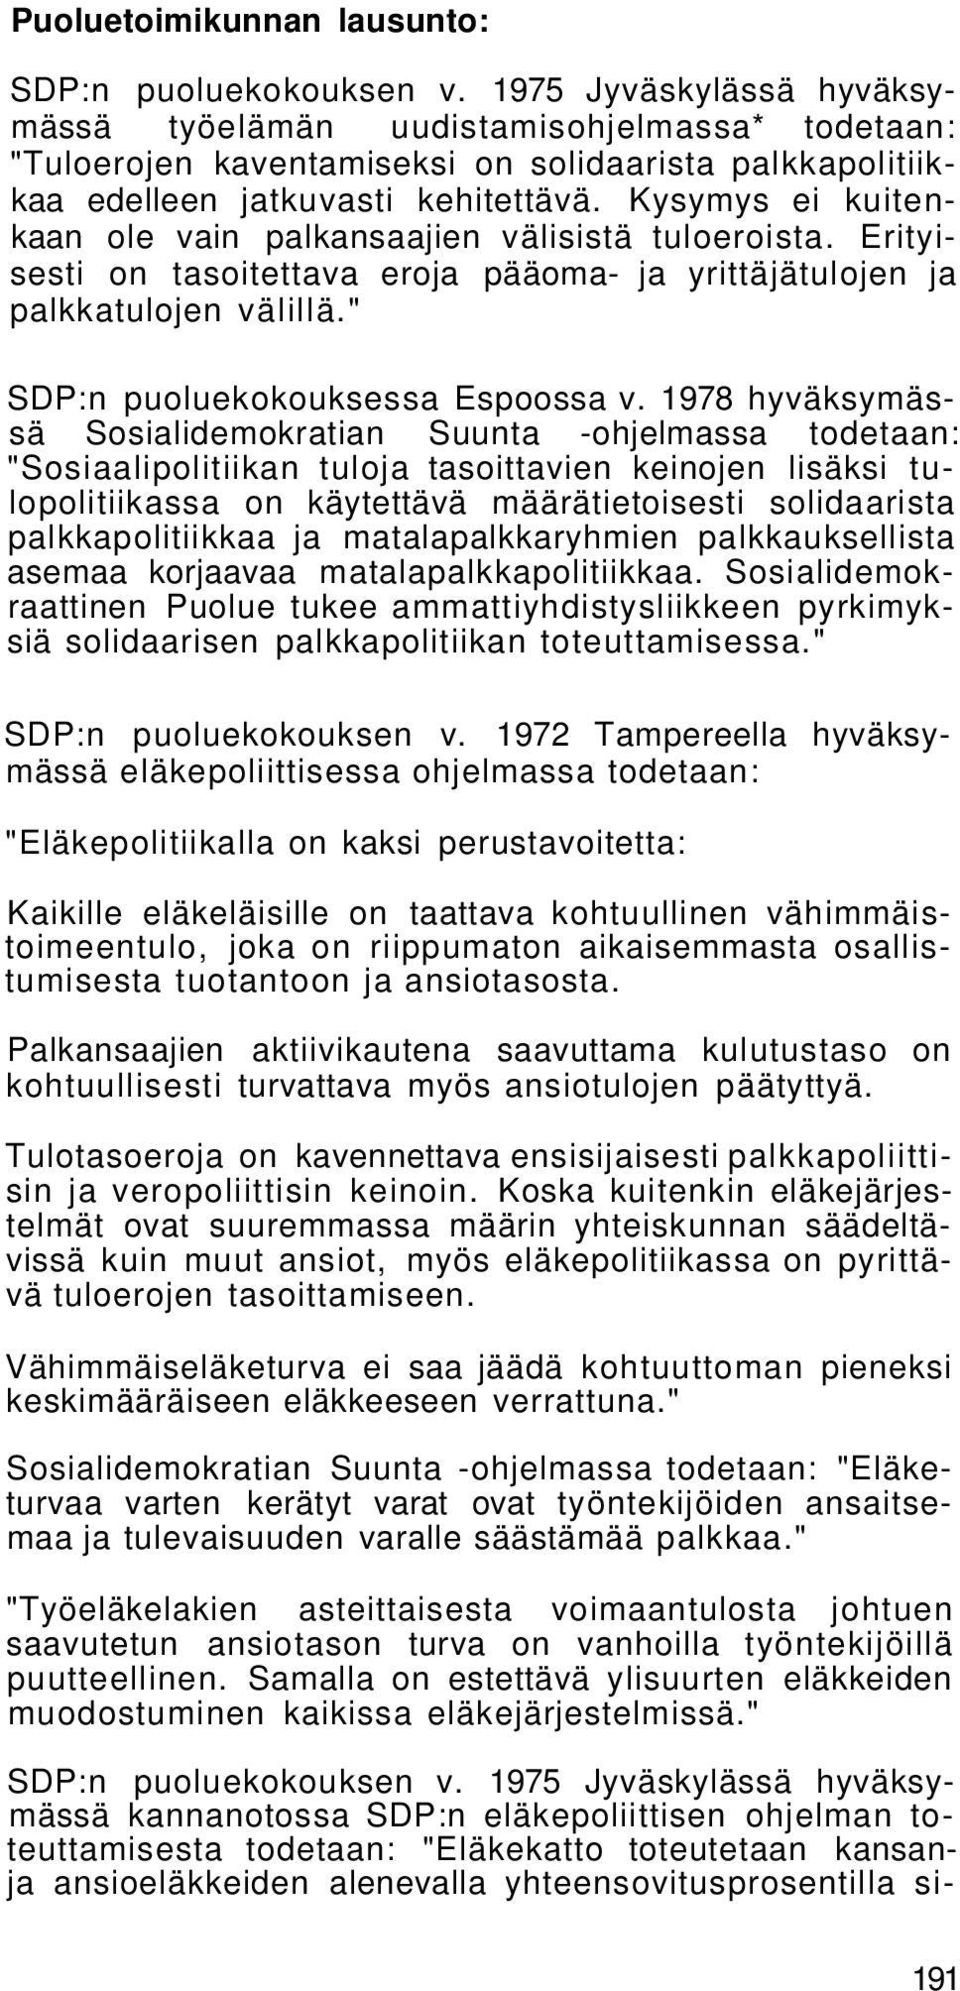 1978 hyväksymässä Sosialidemokratian Suunta -ohjelmassa todetaan: "Sosiaalipolitiikan tuloja tasoittavien keinojen lisäksi tulopolitiikassa on käytettävä määrätietoisesti solidaarista